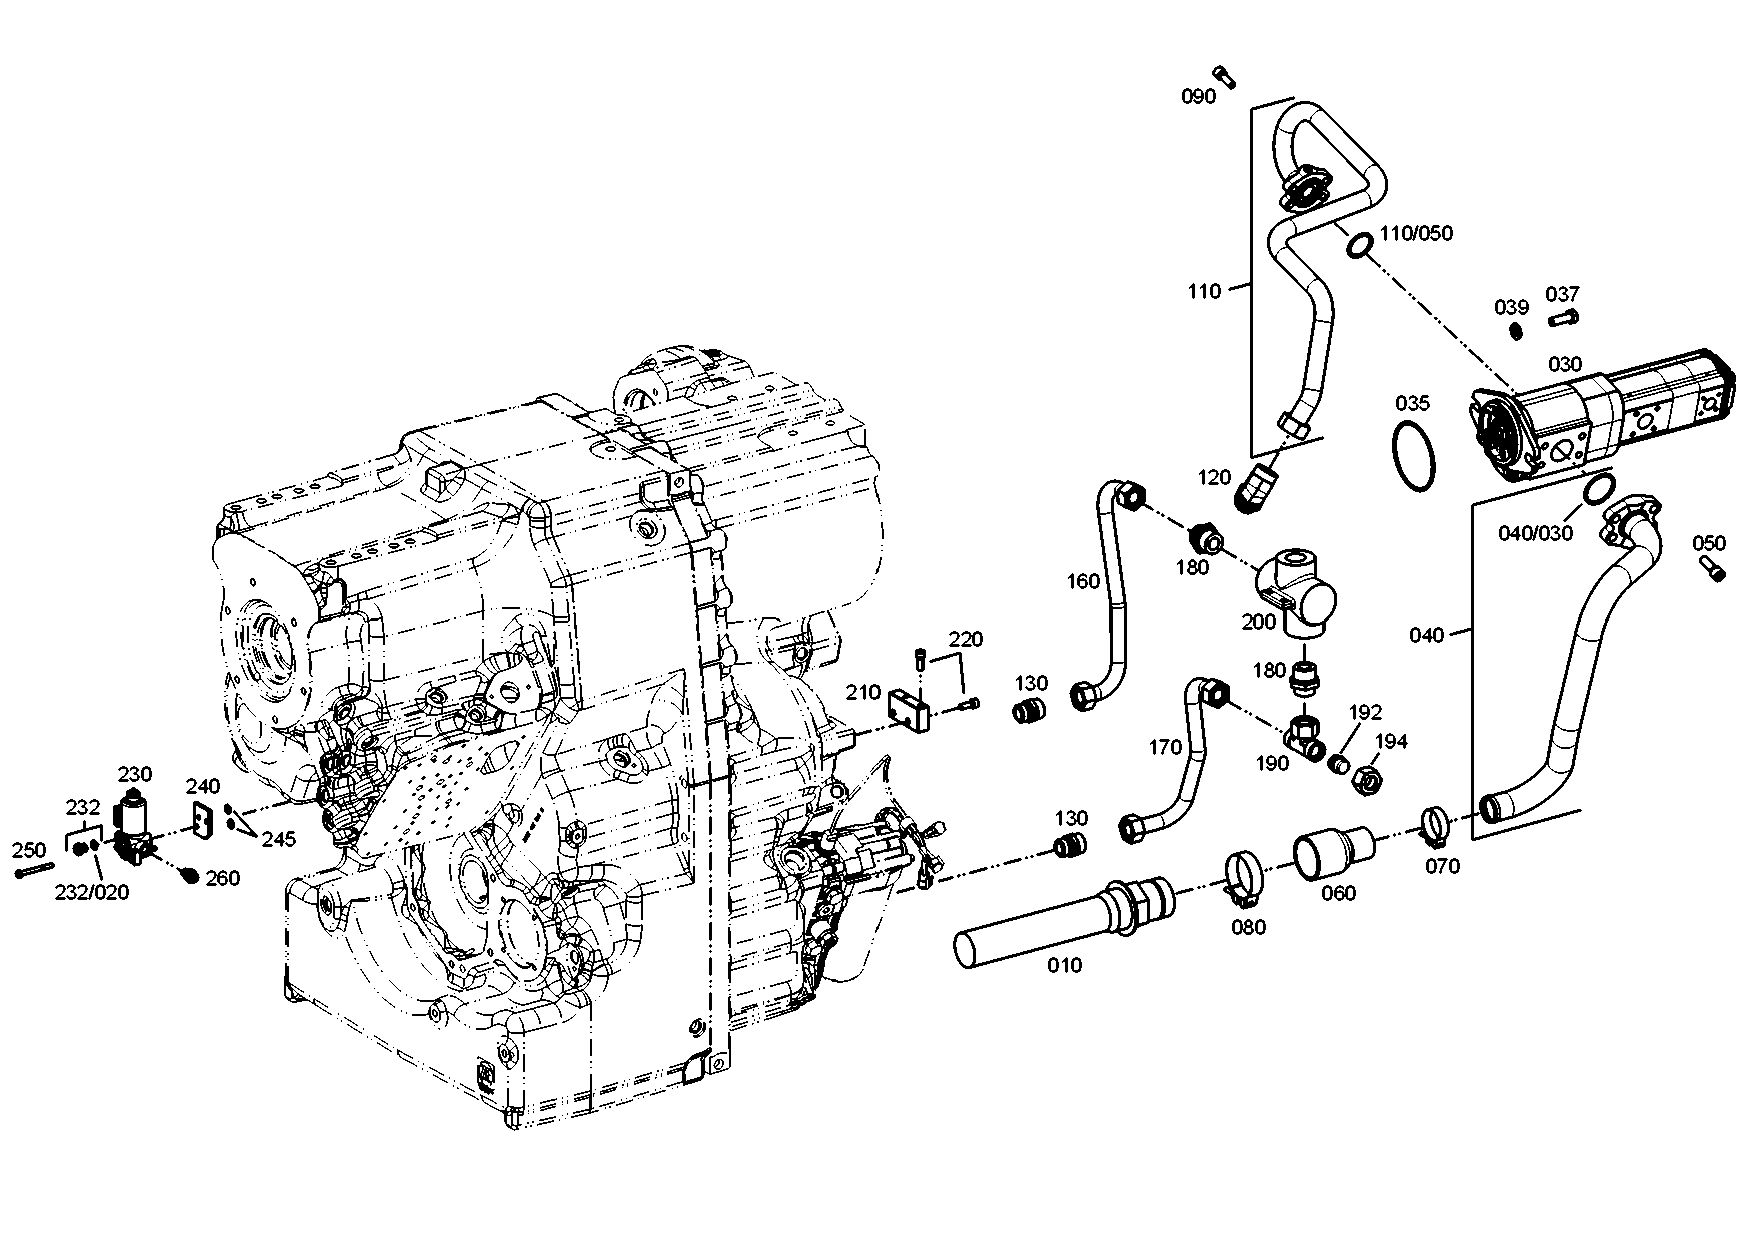 drawing for JOHN DEERE T170120 - CAP SCREW (figure 3)